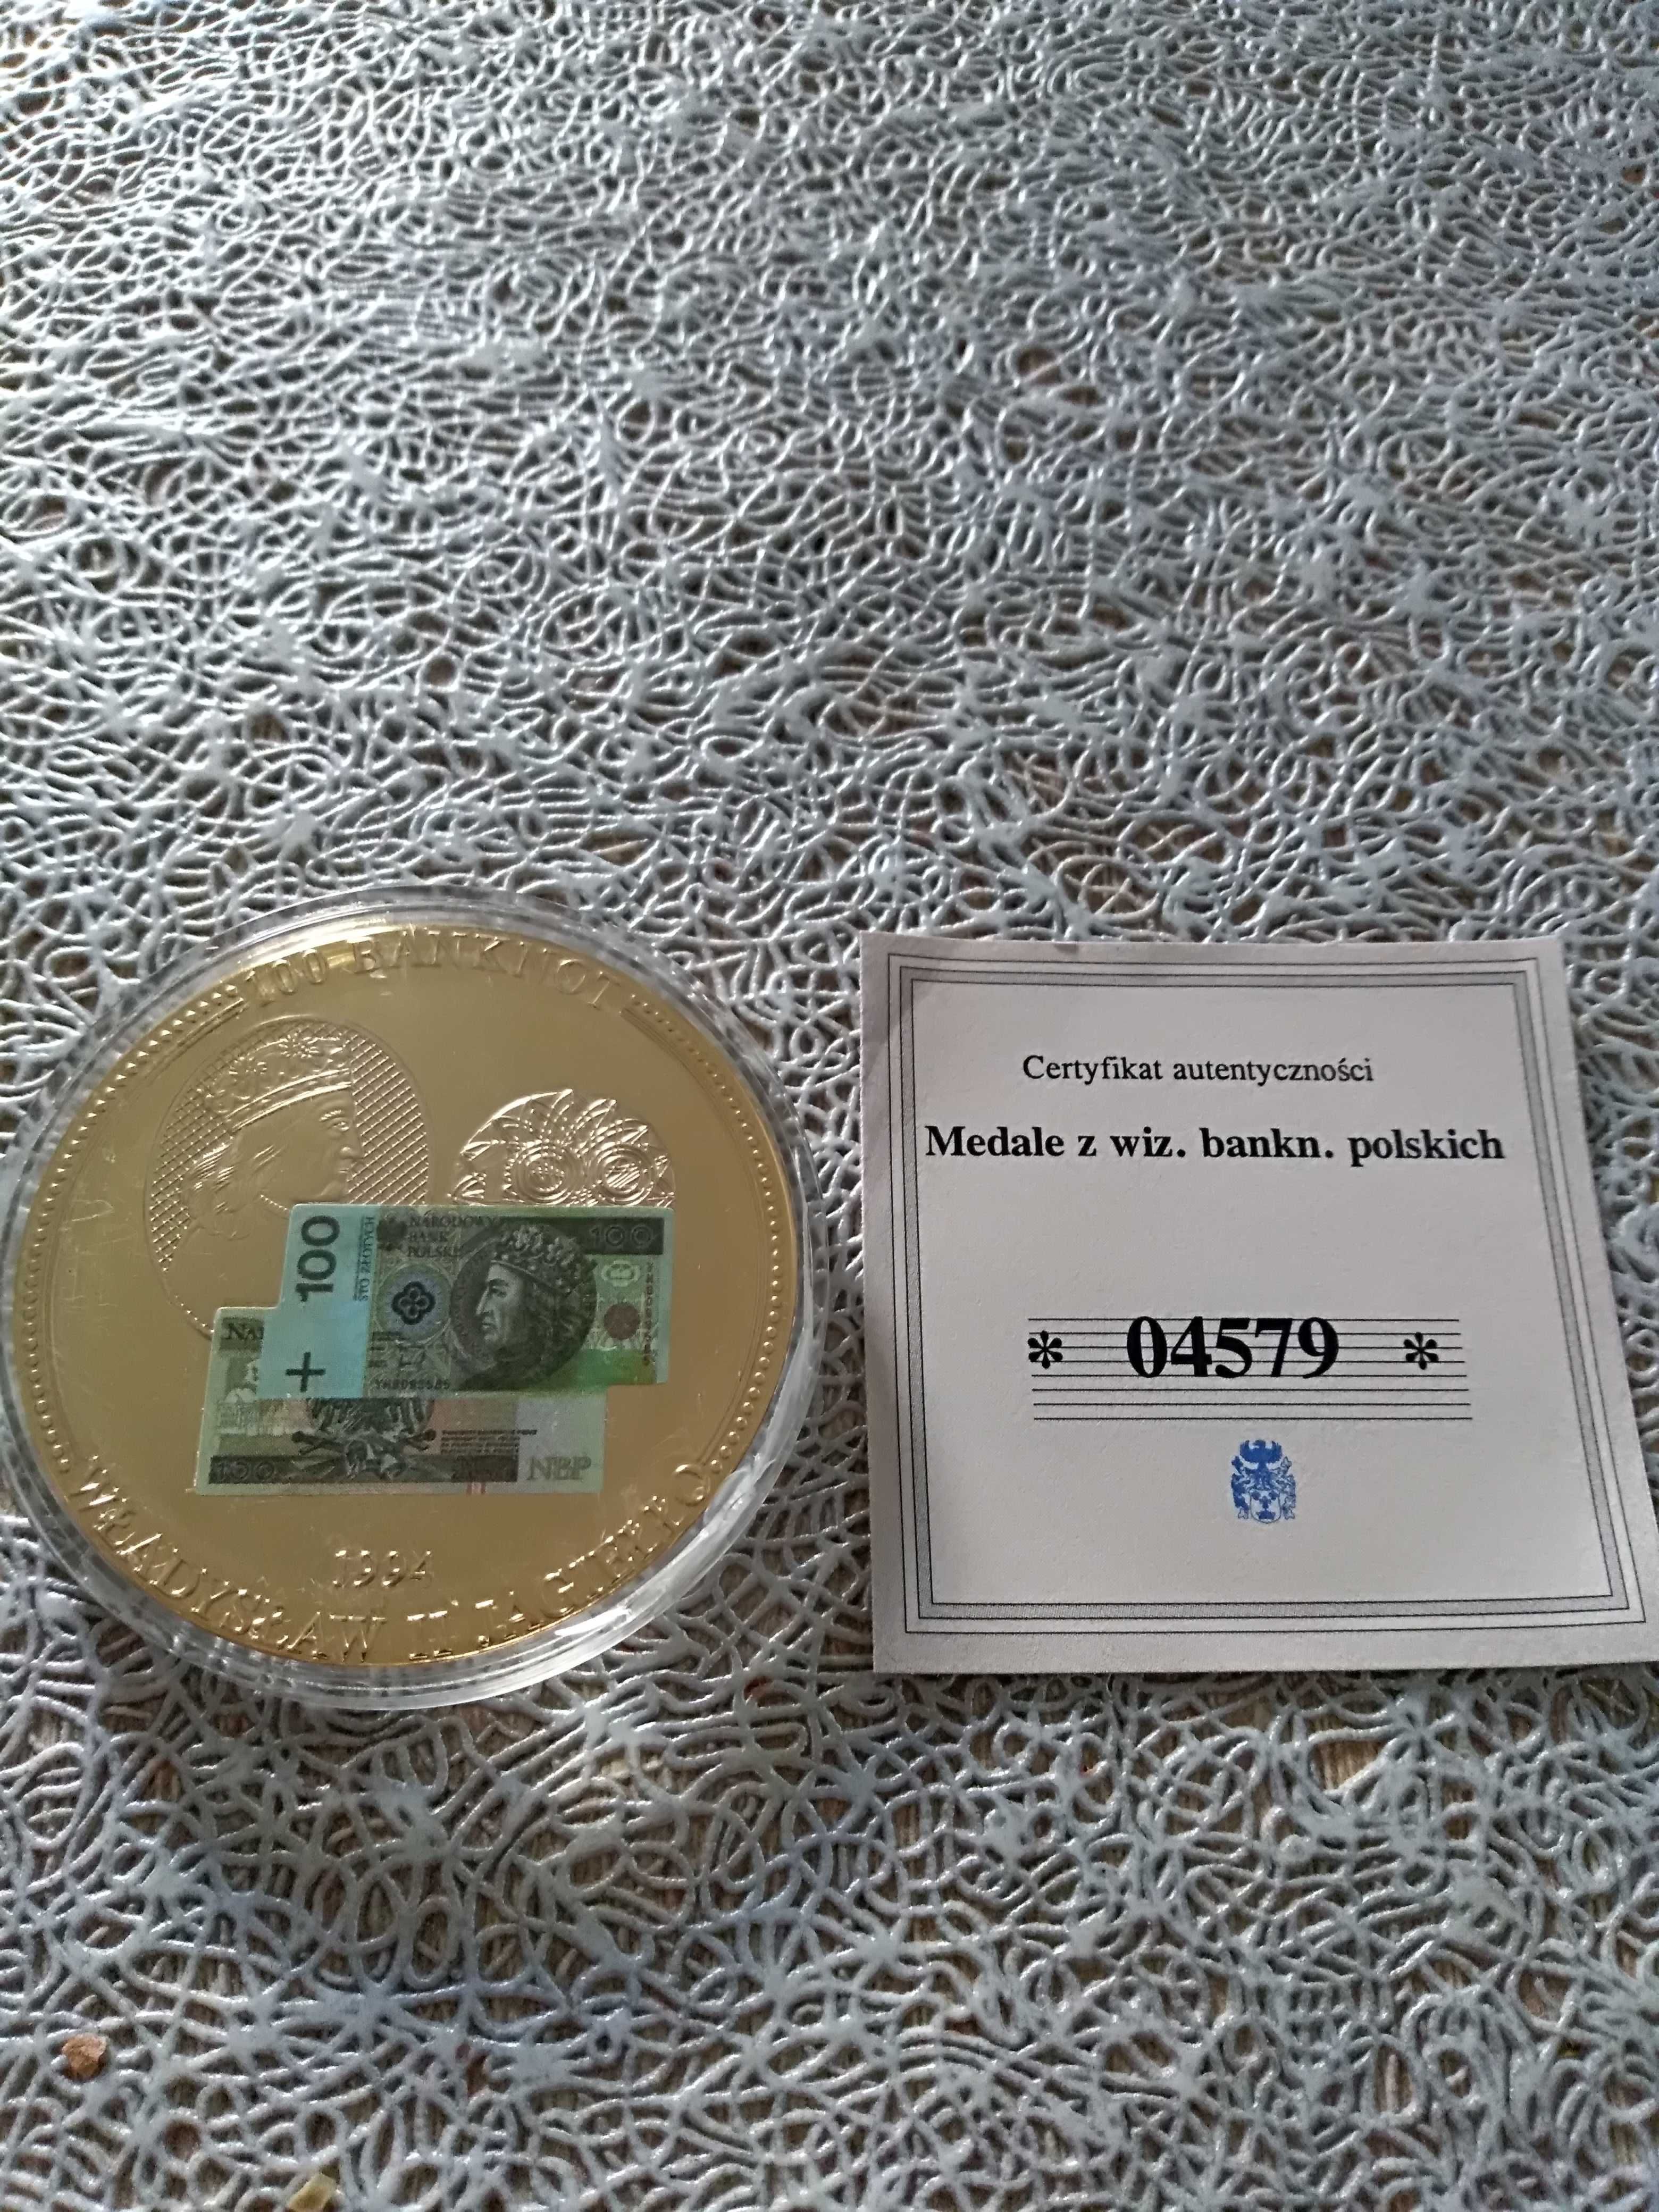 Medal z wizerunkiem banknotów polskich + certyfikat